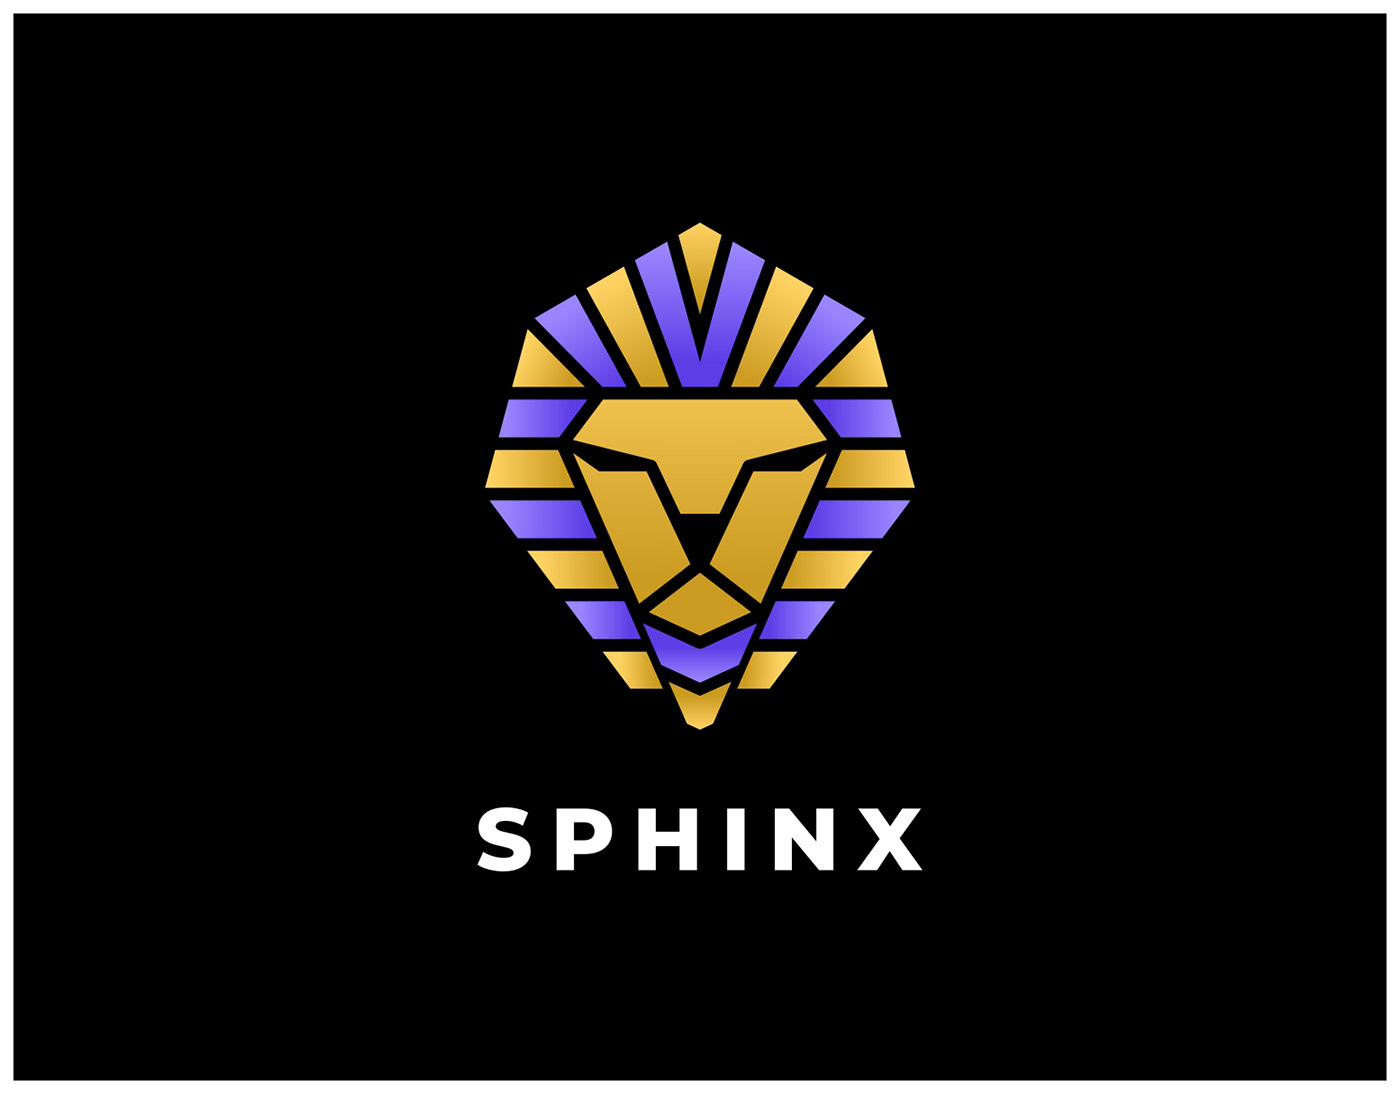 Sphinx Pharaoh God Egypt Logo